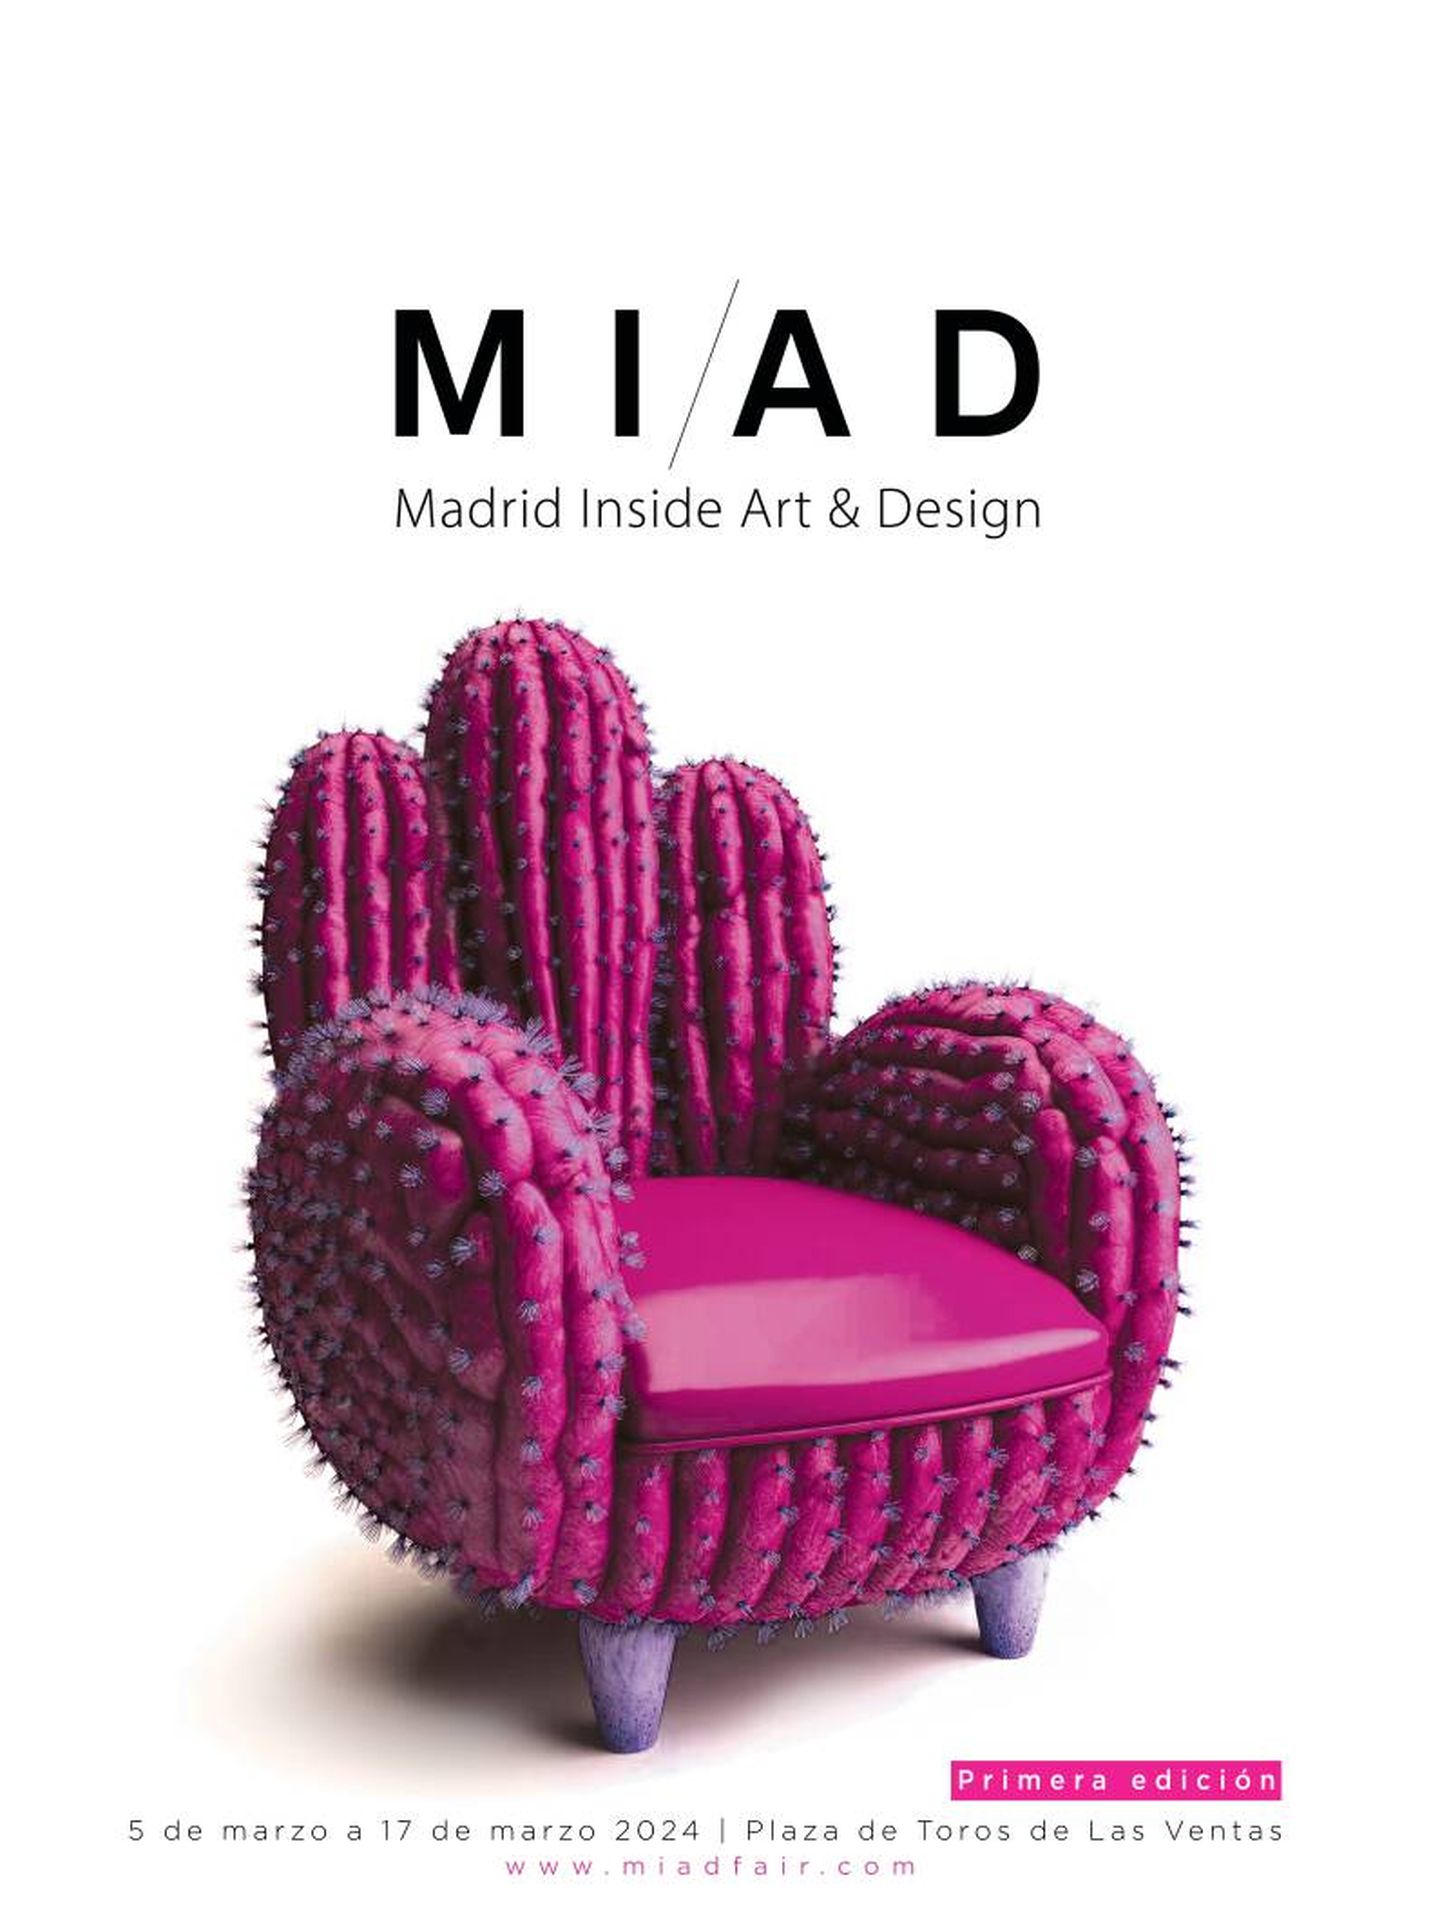 La próxima gran feria consagrada al arte y el interiorismo de Madrid se aproxima. (Cortesía)